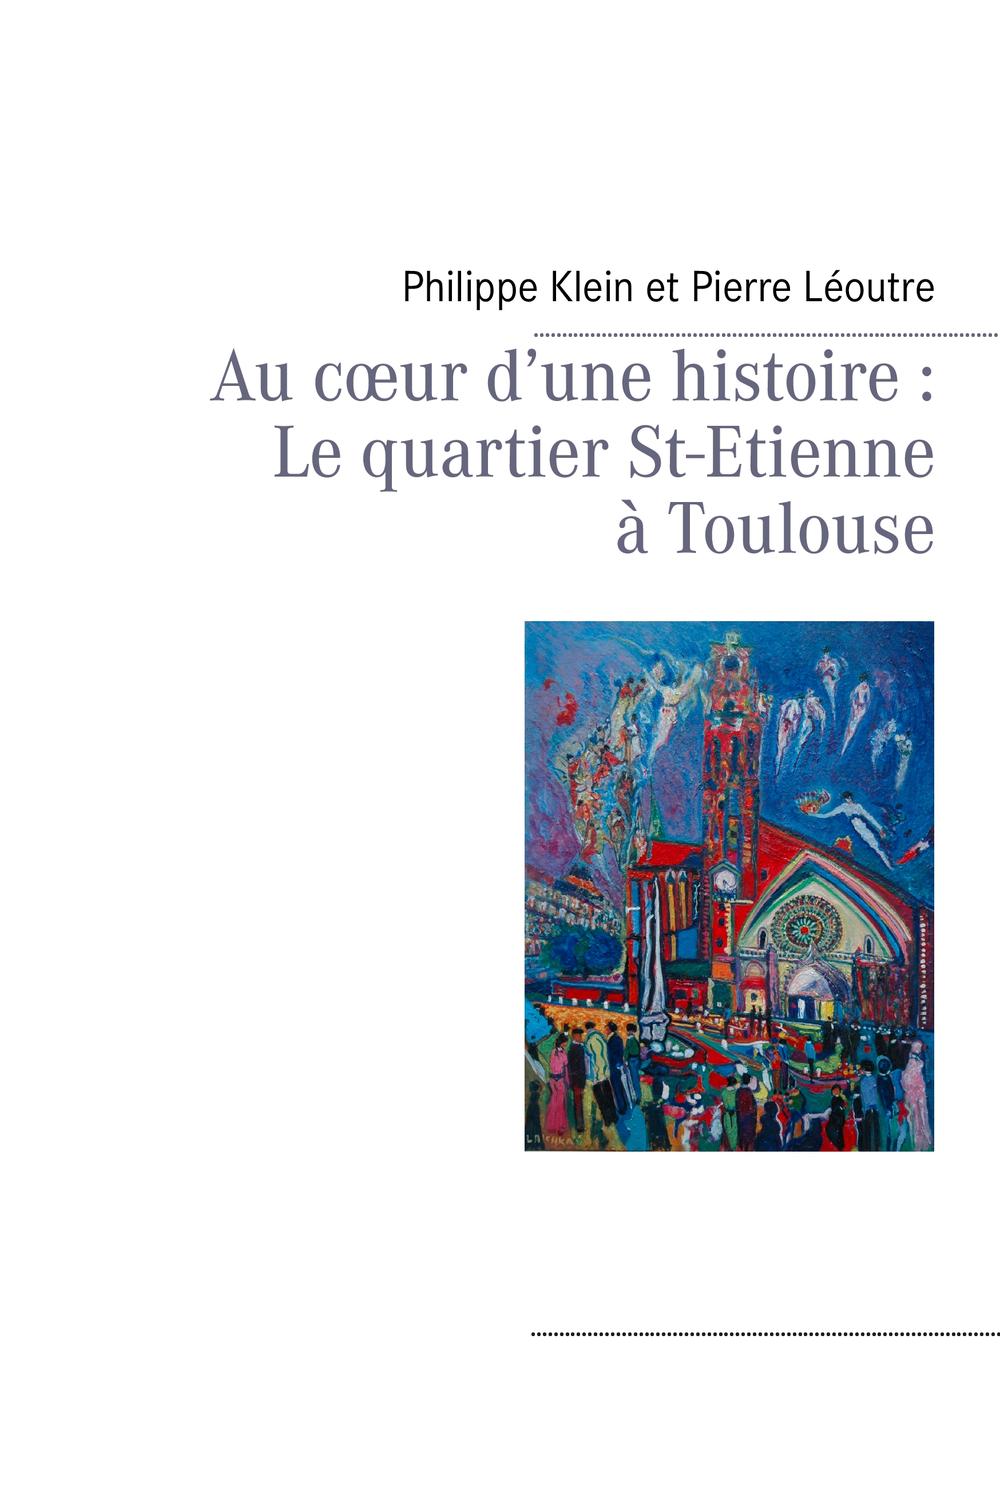 Au cœur d'une histoire : Le quartier St-Etienne à Toulouse - Philippe Klein, Pierre Léoutre